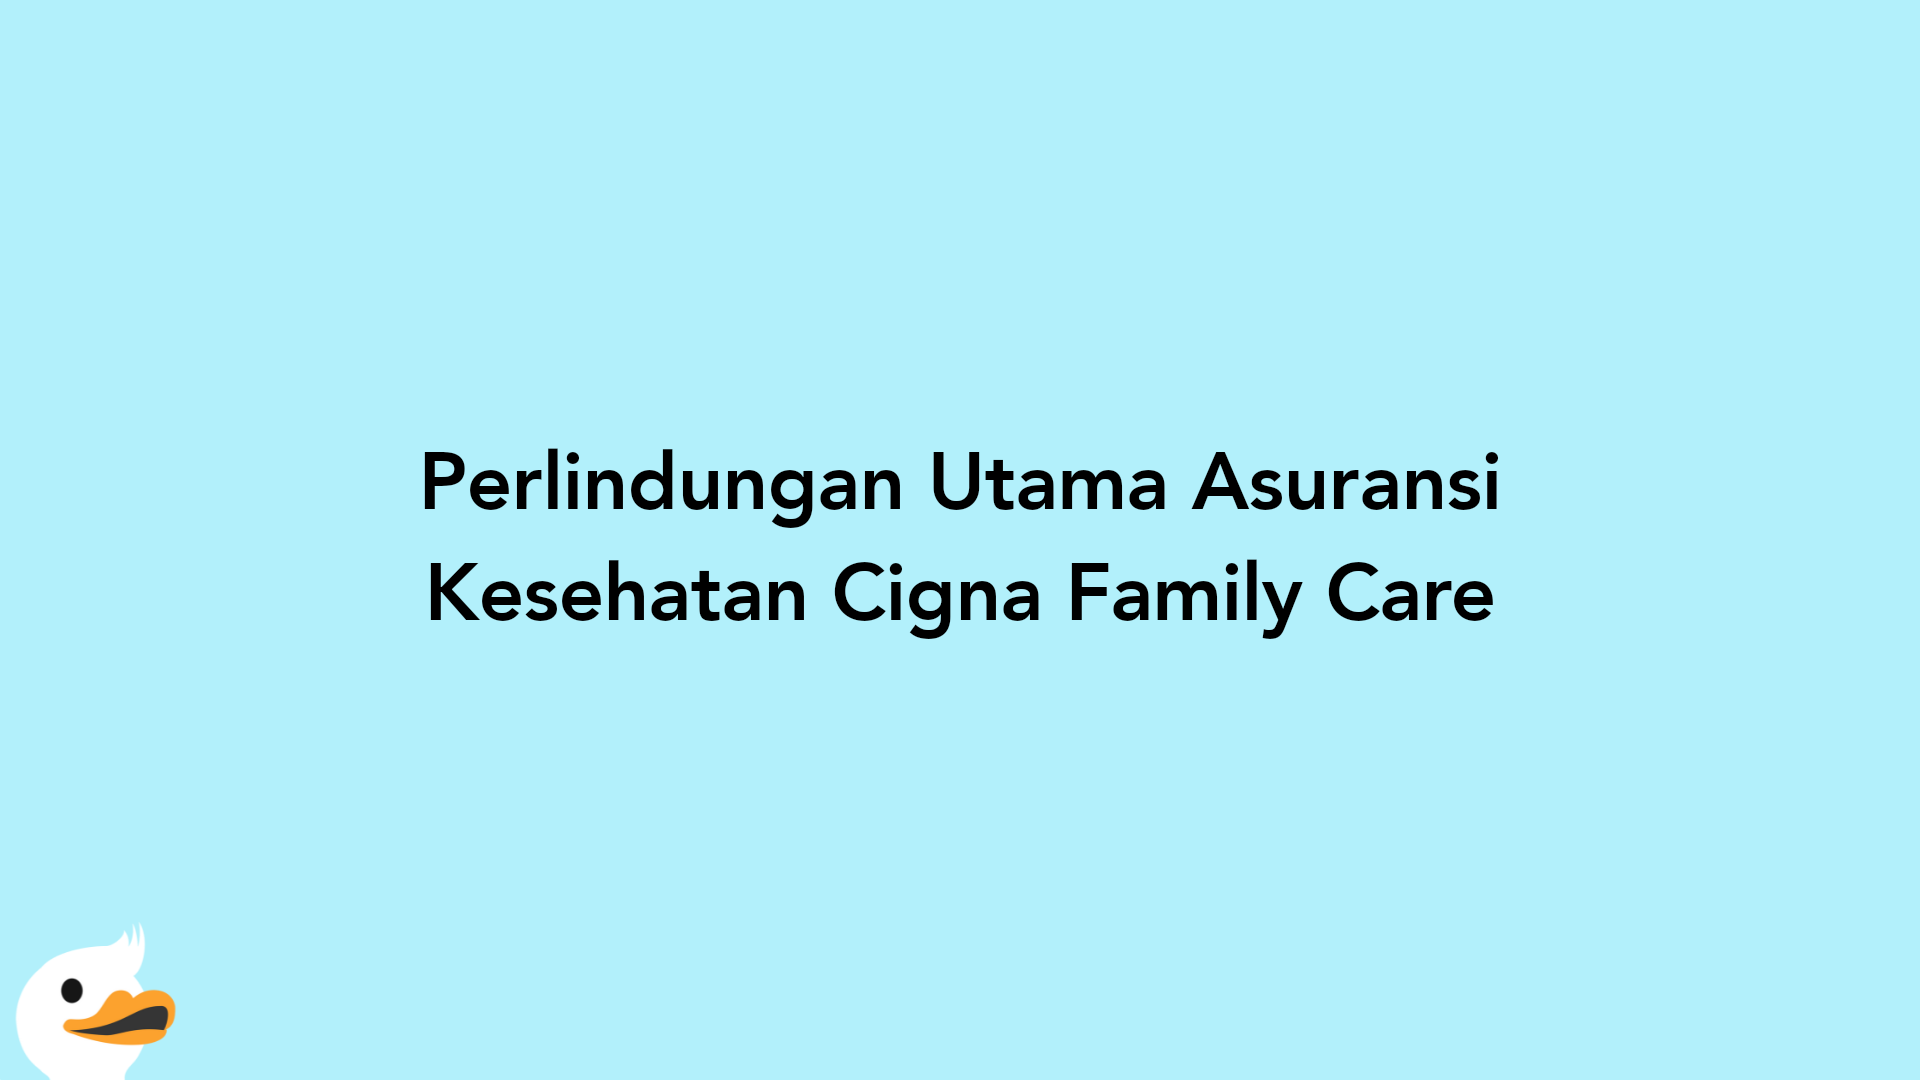 Perlindungan Utama Asuransi Kesehatan Cigna Family Care